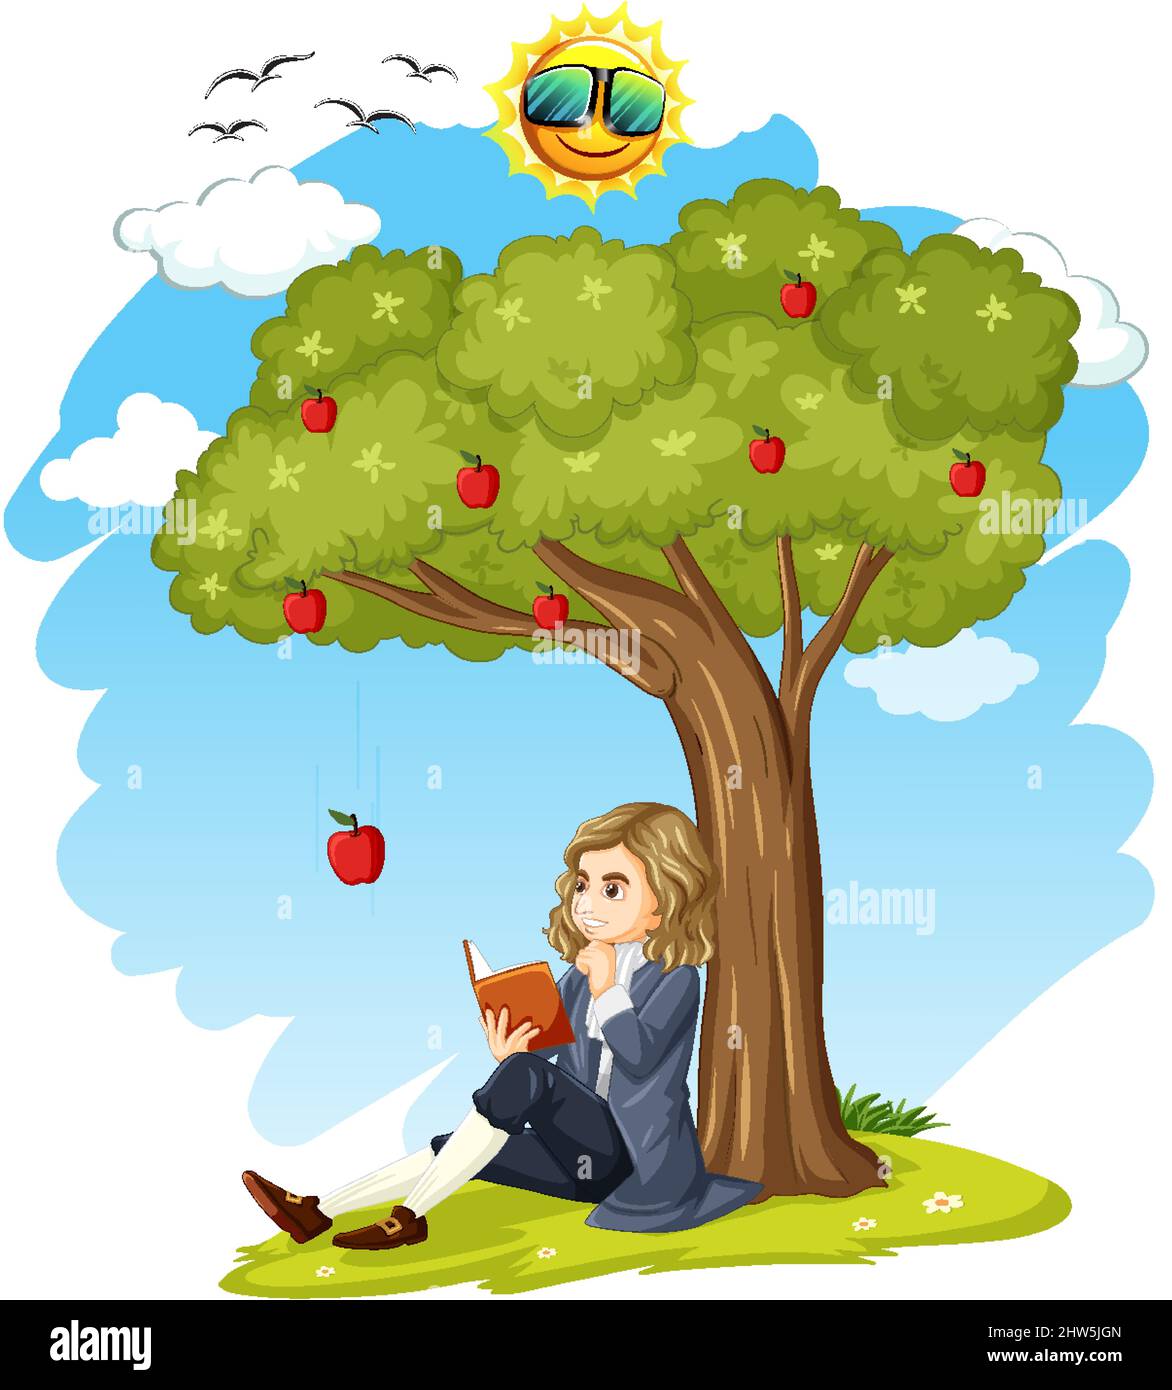 Isaac Newton sitting under apple tree illustration Stock Vector Image & Art  - Alamy